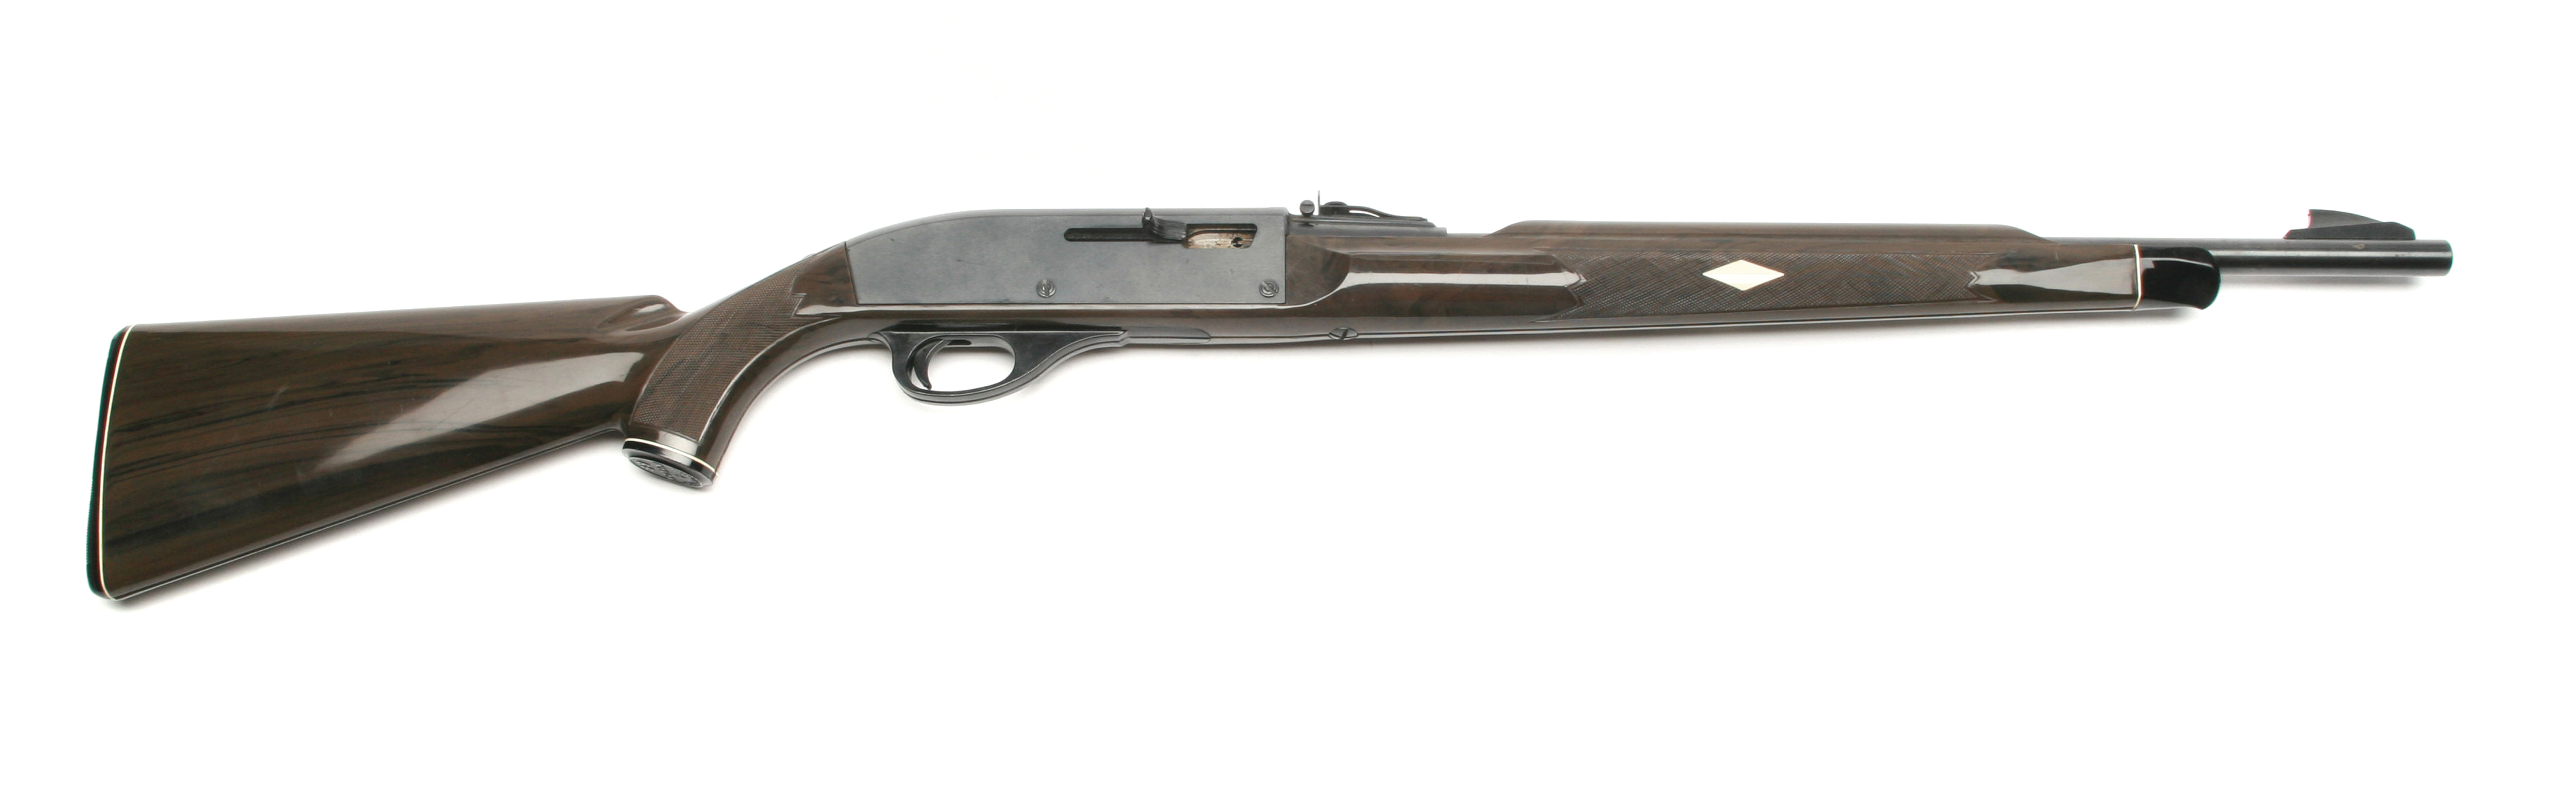 The Remington Nylon Model 66 rifle on a white background.